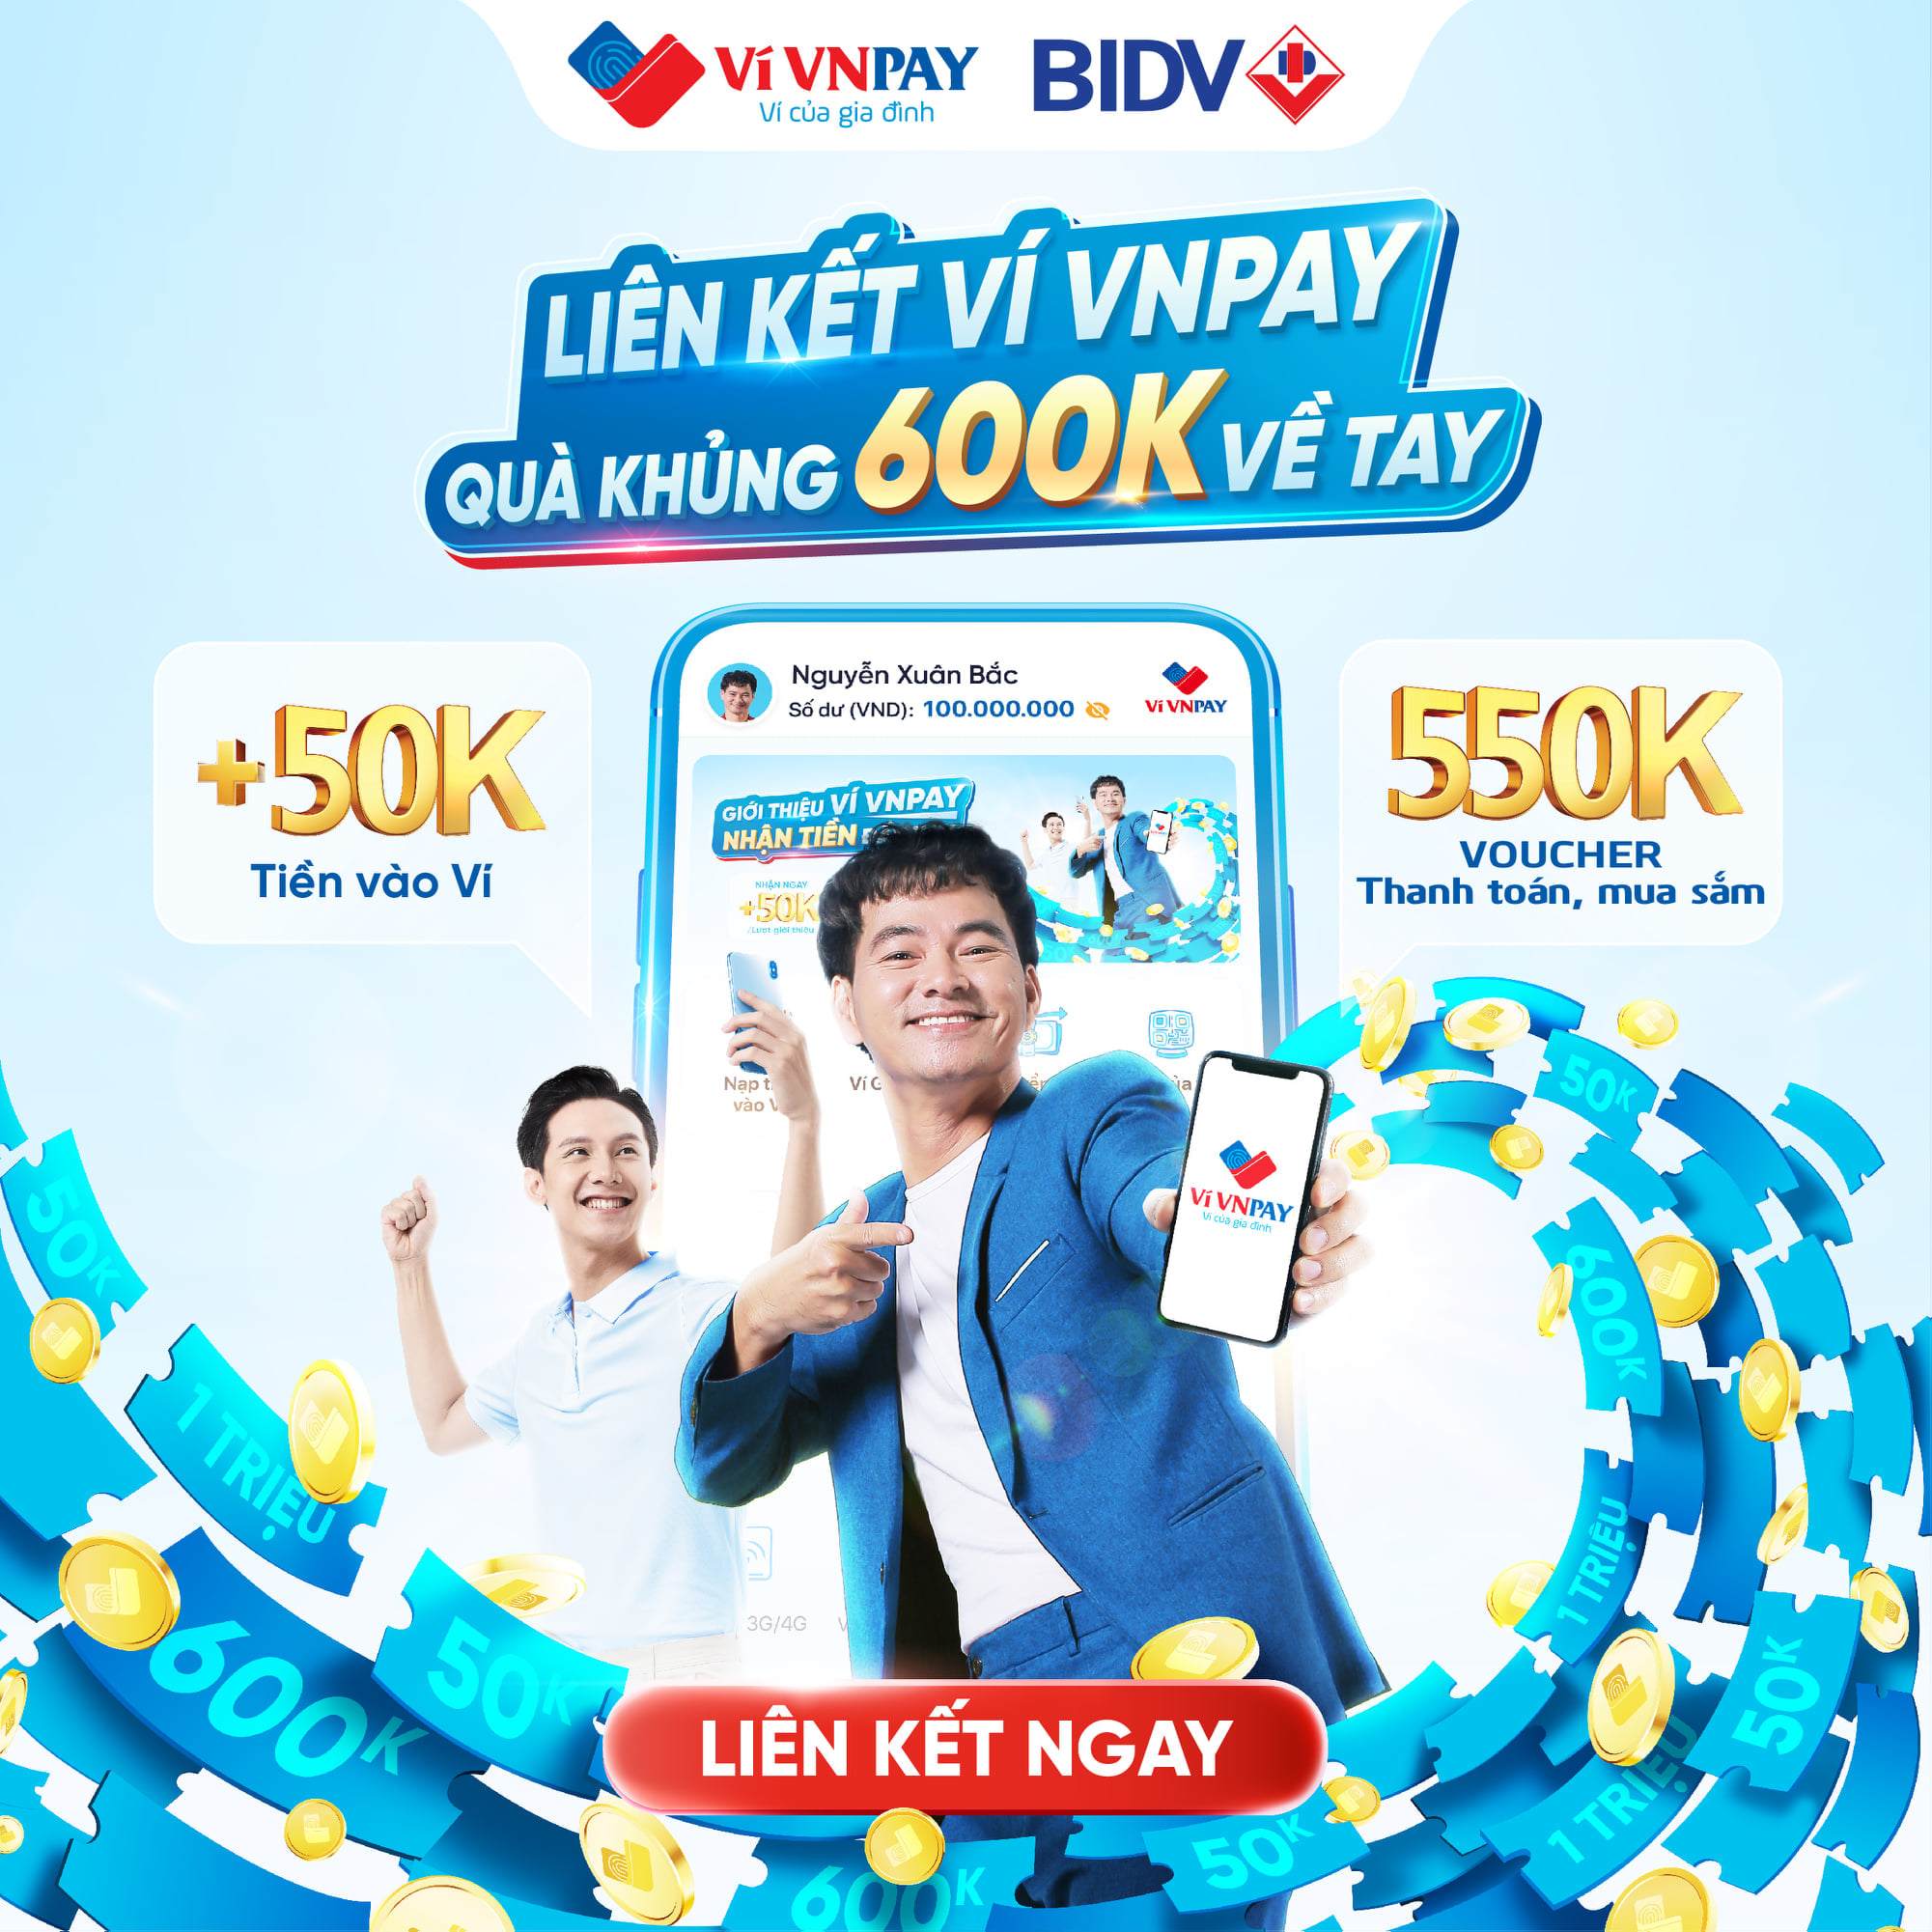 Liên kết tài khoản BIDV trên ví VNPAY, quà “đỉnh” 600.000 đồng về tay